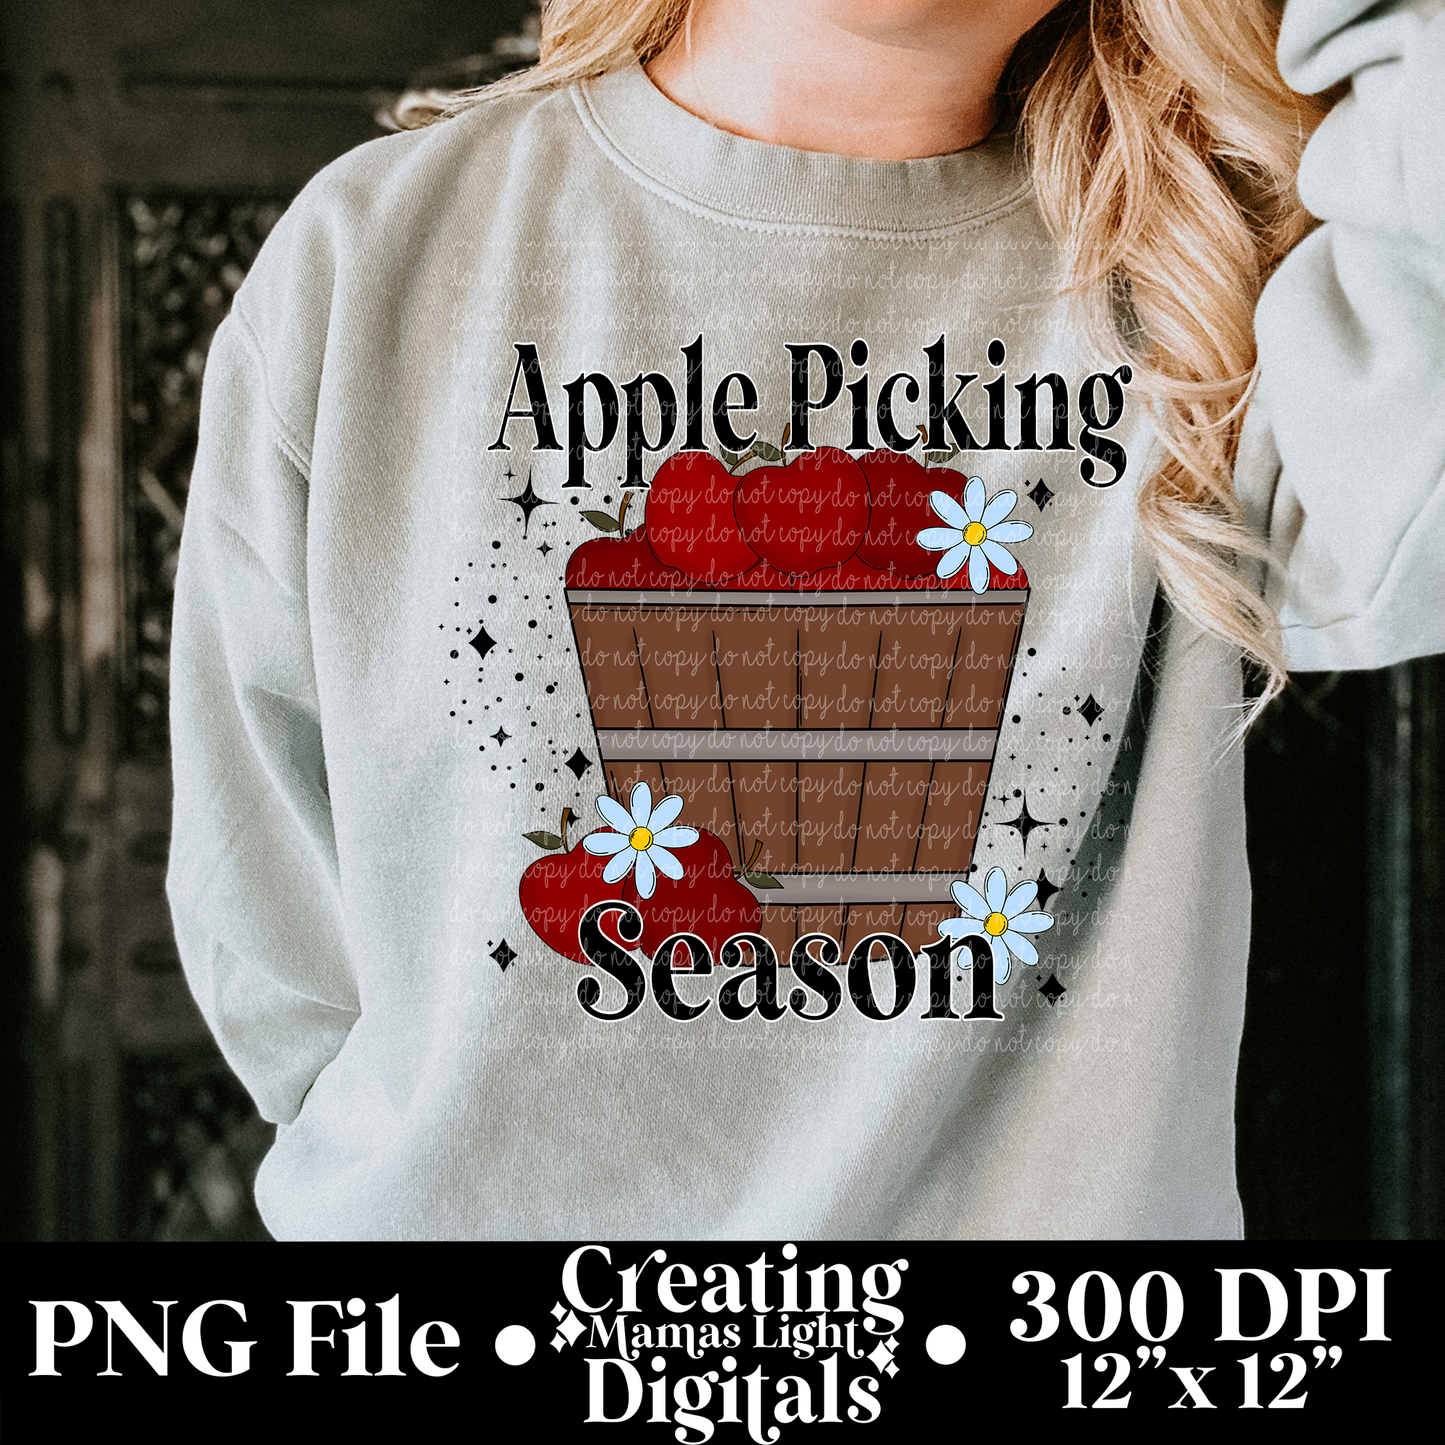 Apple Picking Season